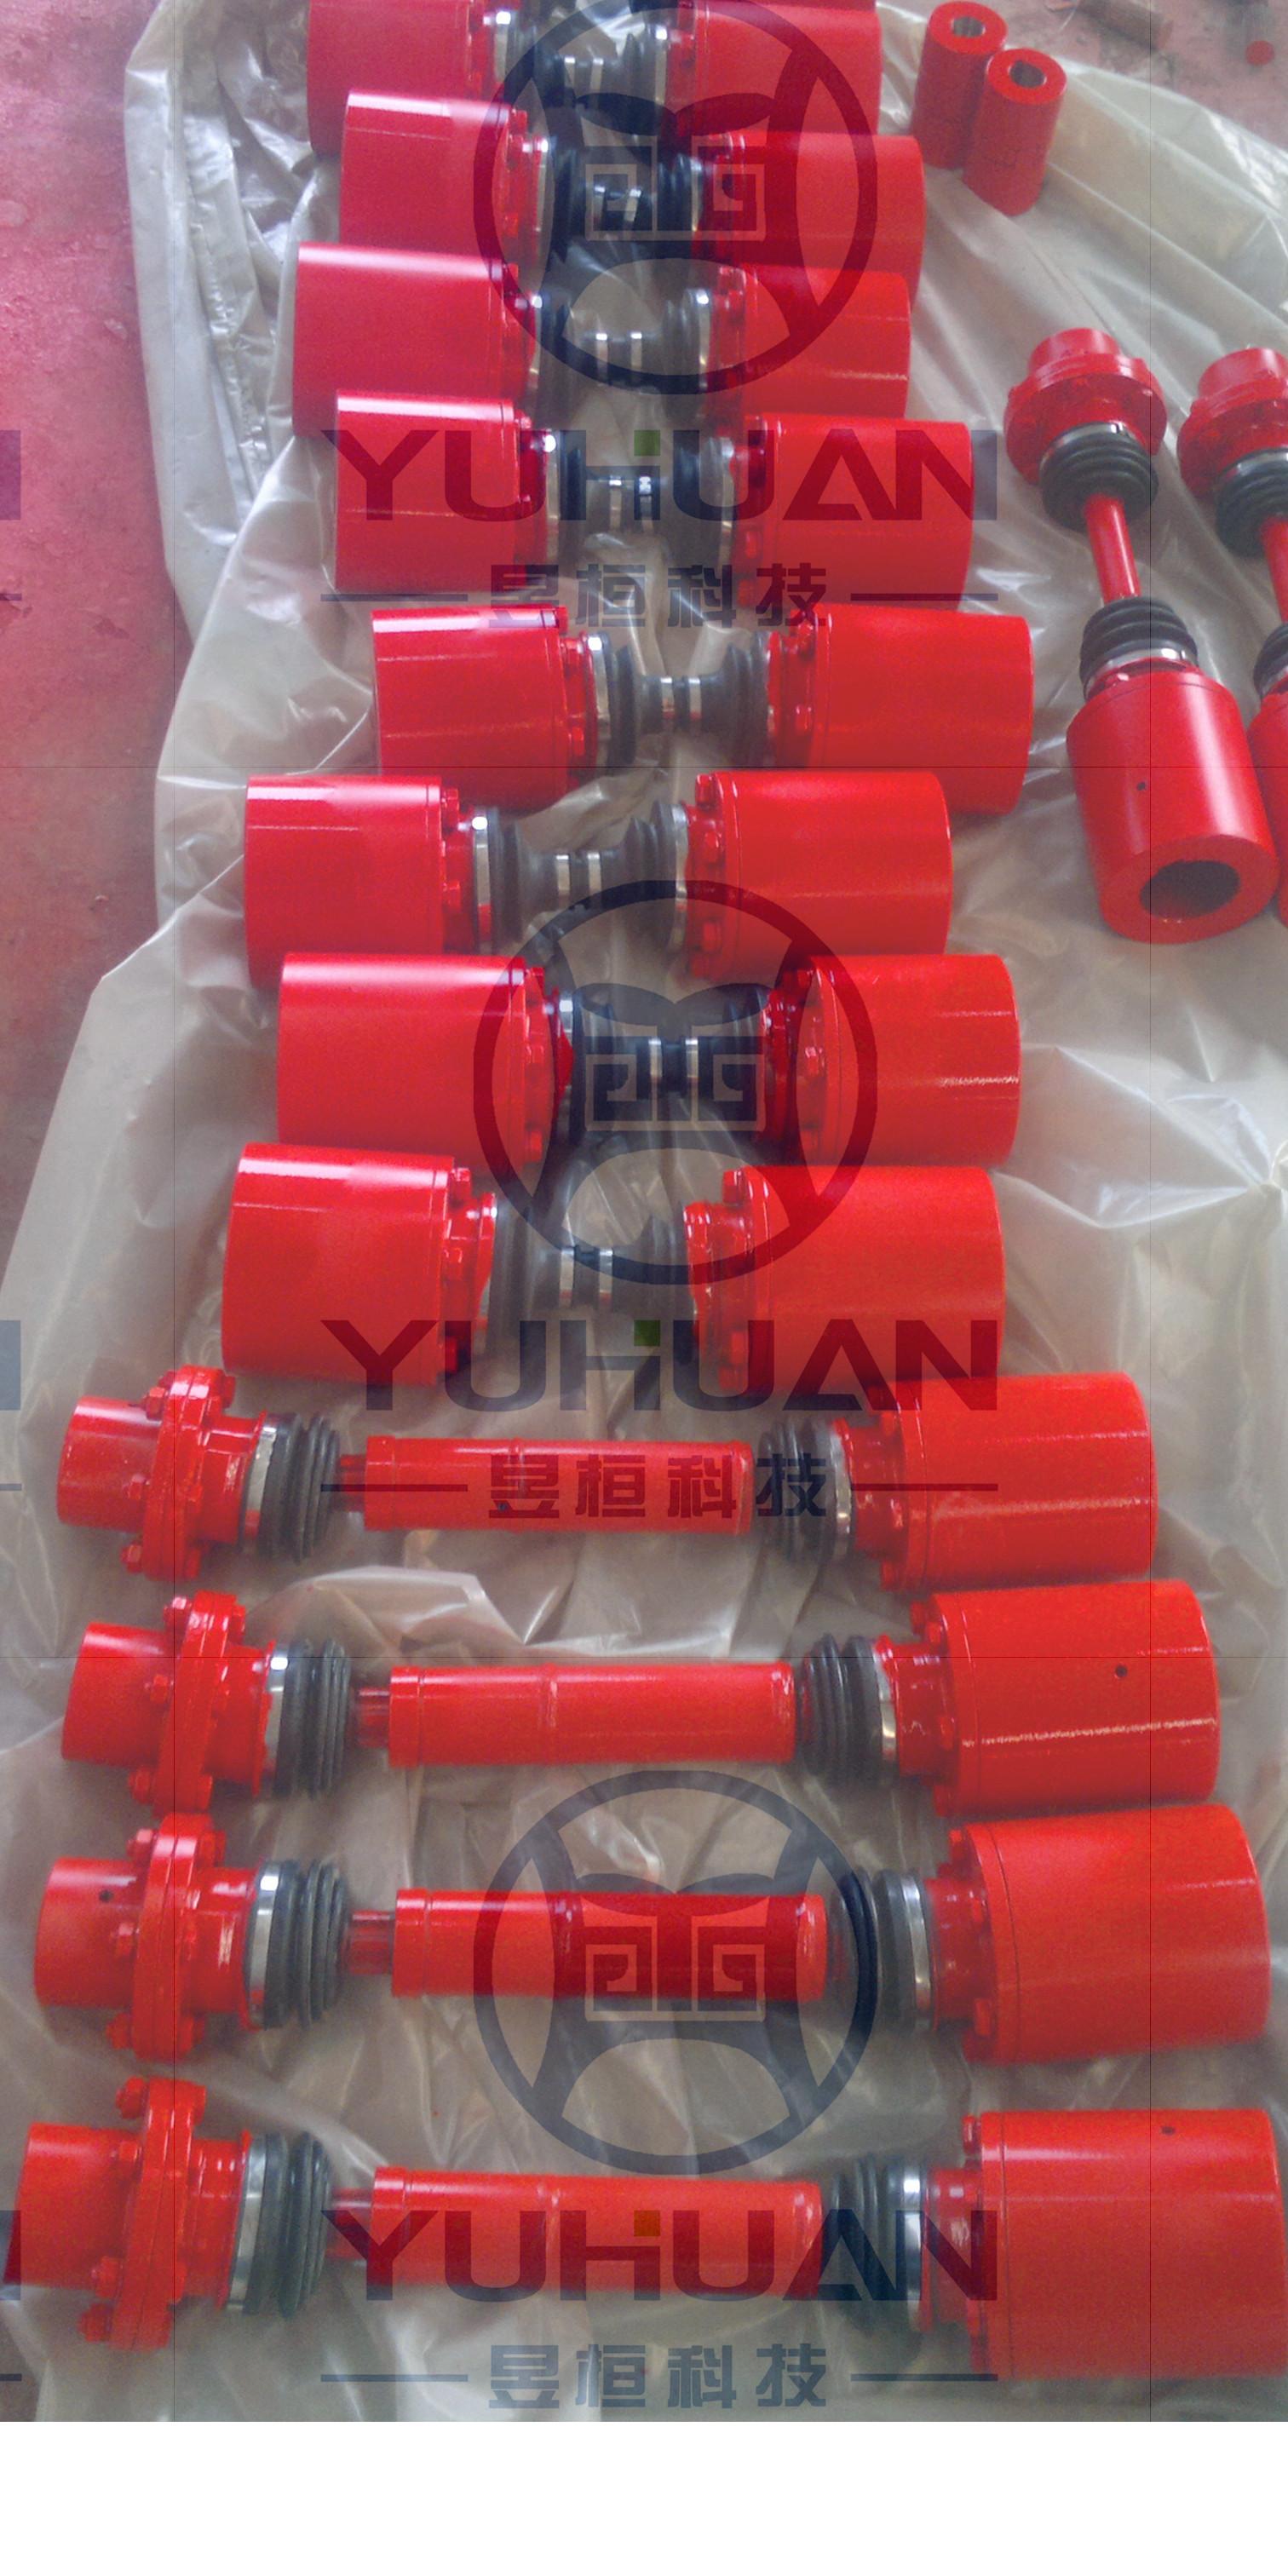 上海昱桓公司专业生产多种型号的球笼联轴器，品质优，价格优，来上海昱桓购买就对了